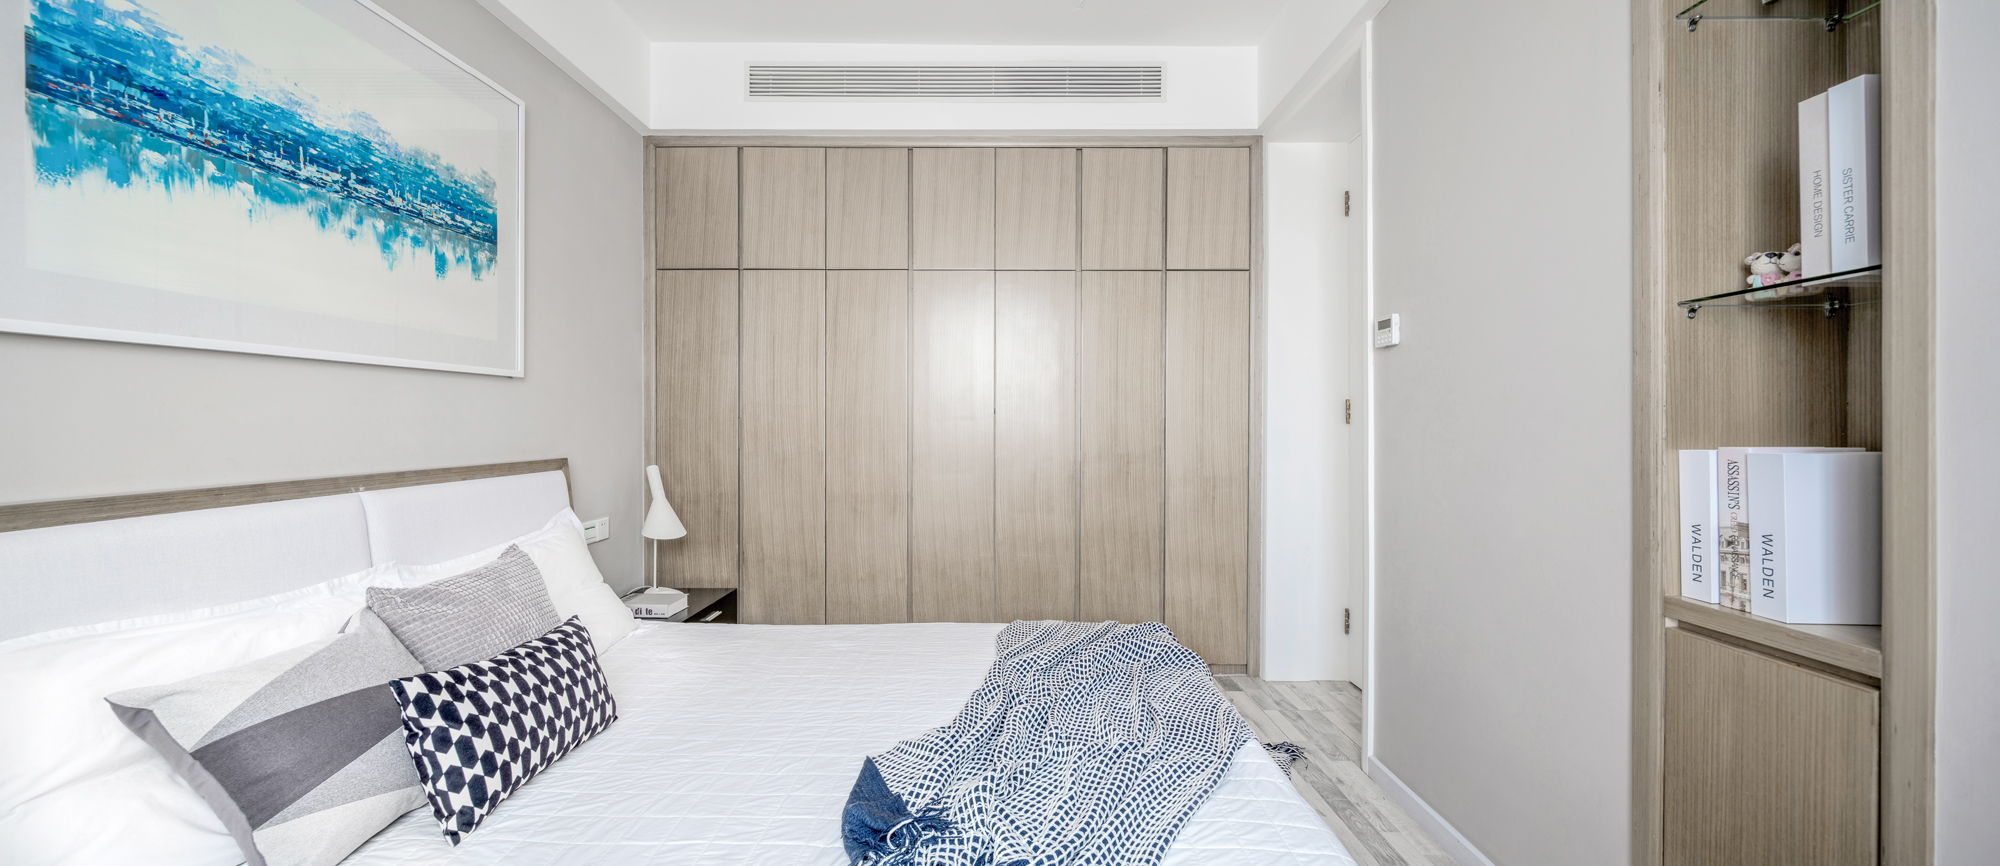 优雅31平简约小户型卧室装修效果图卧室床现代简约卧室设计图片赏析